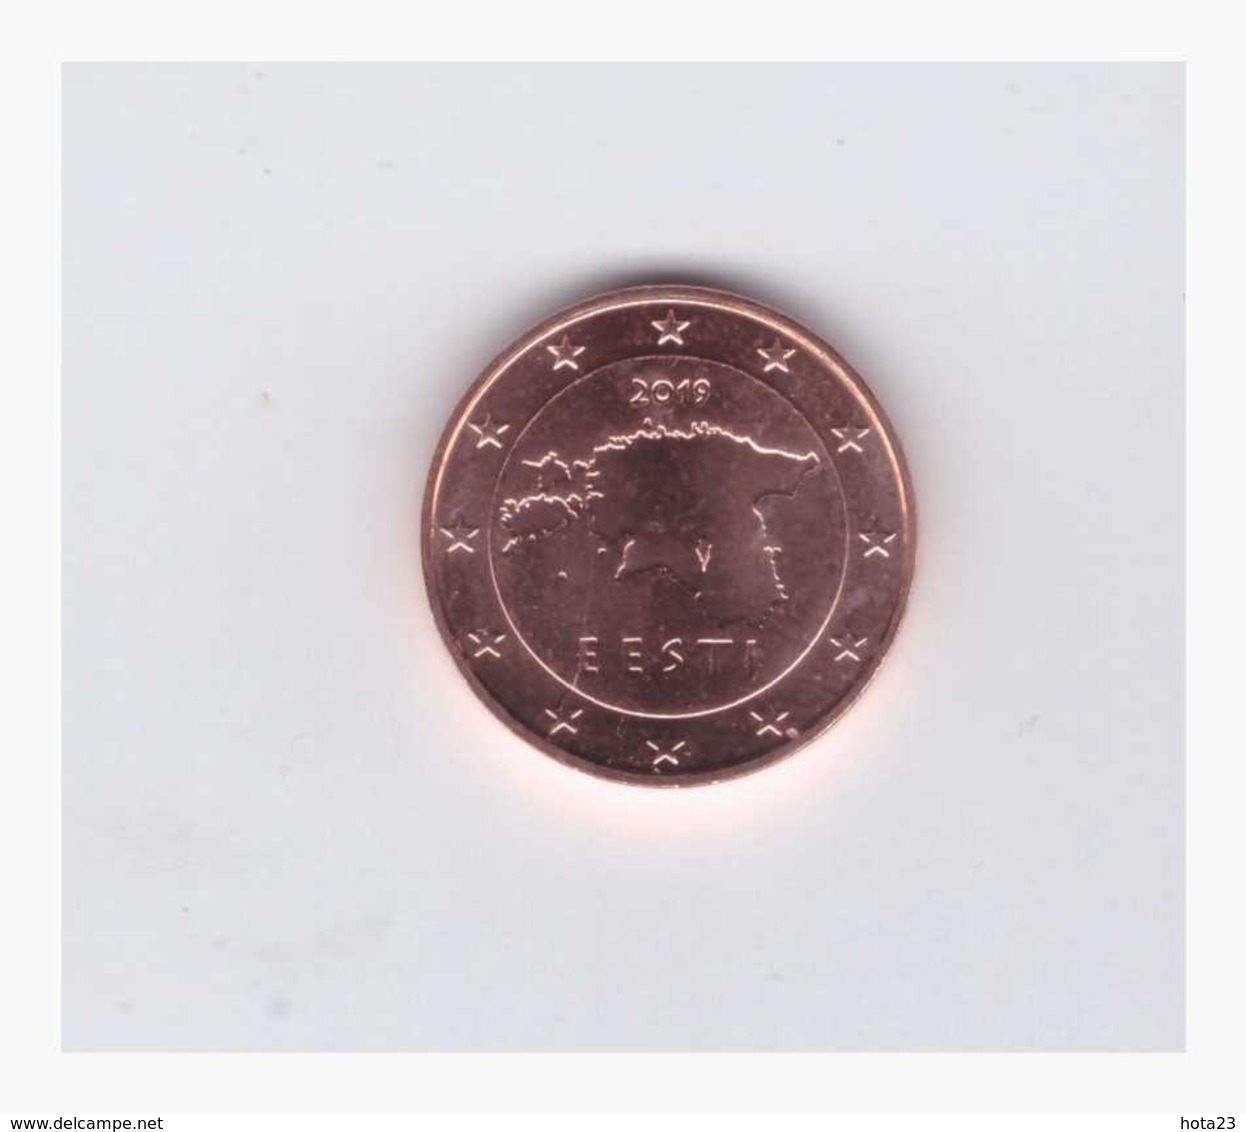 Estonia , ESTLAND , Eesti 2019 1 Euro Cent Coin From Roll UNC - Estonia